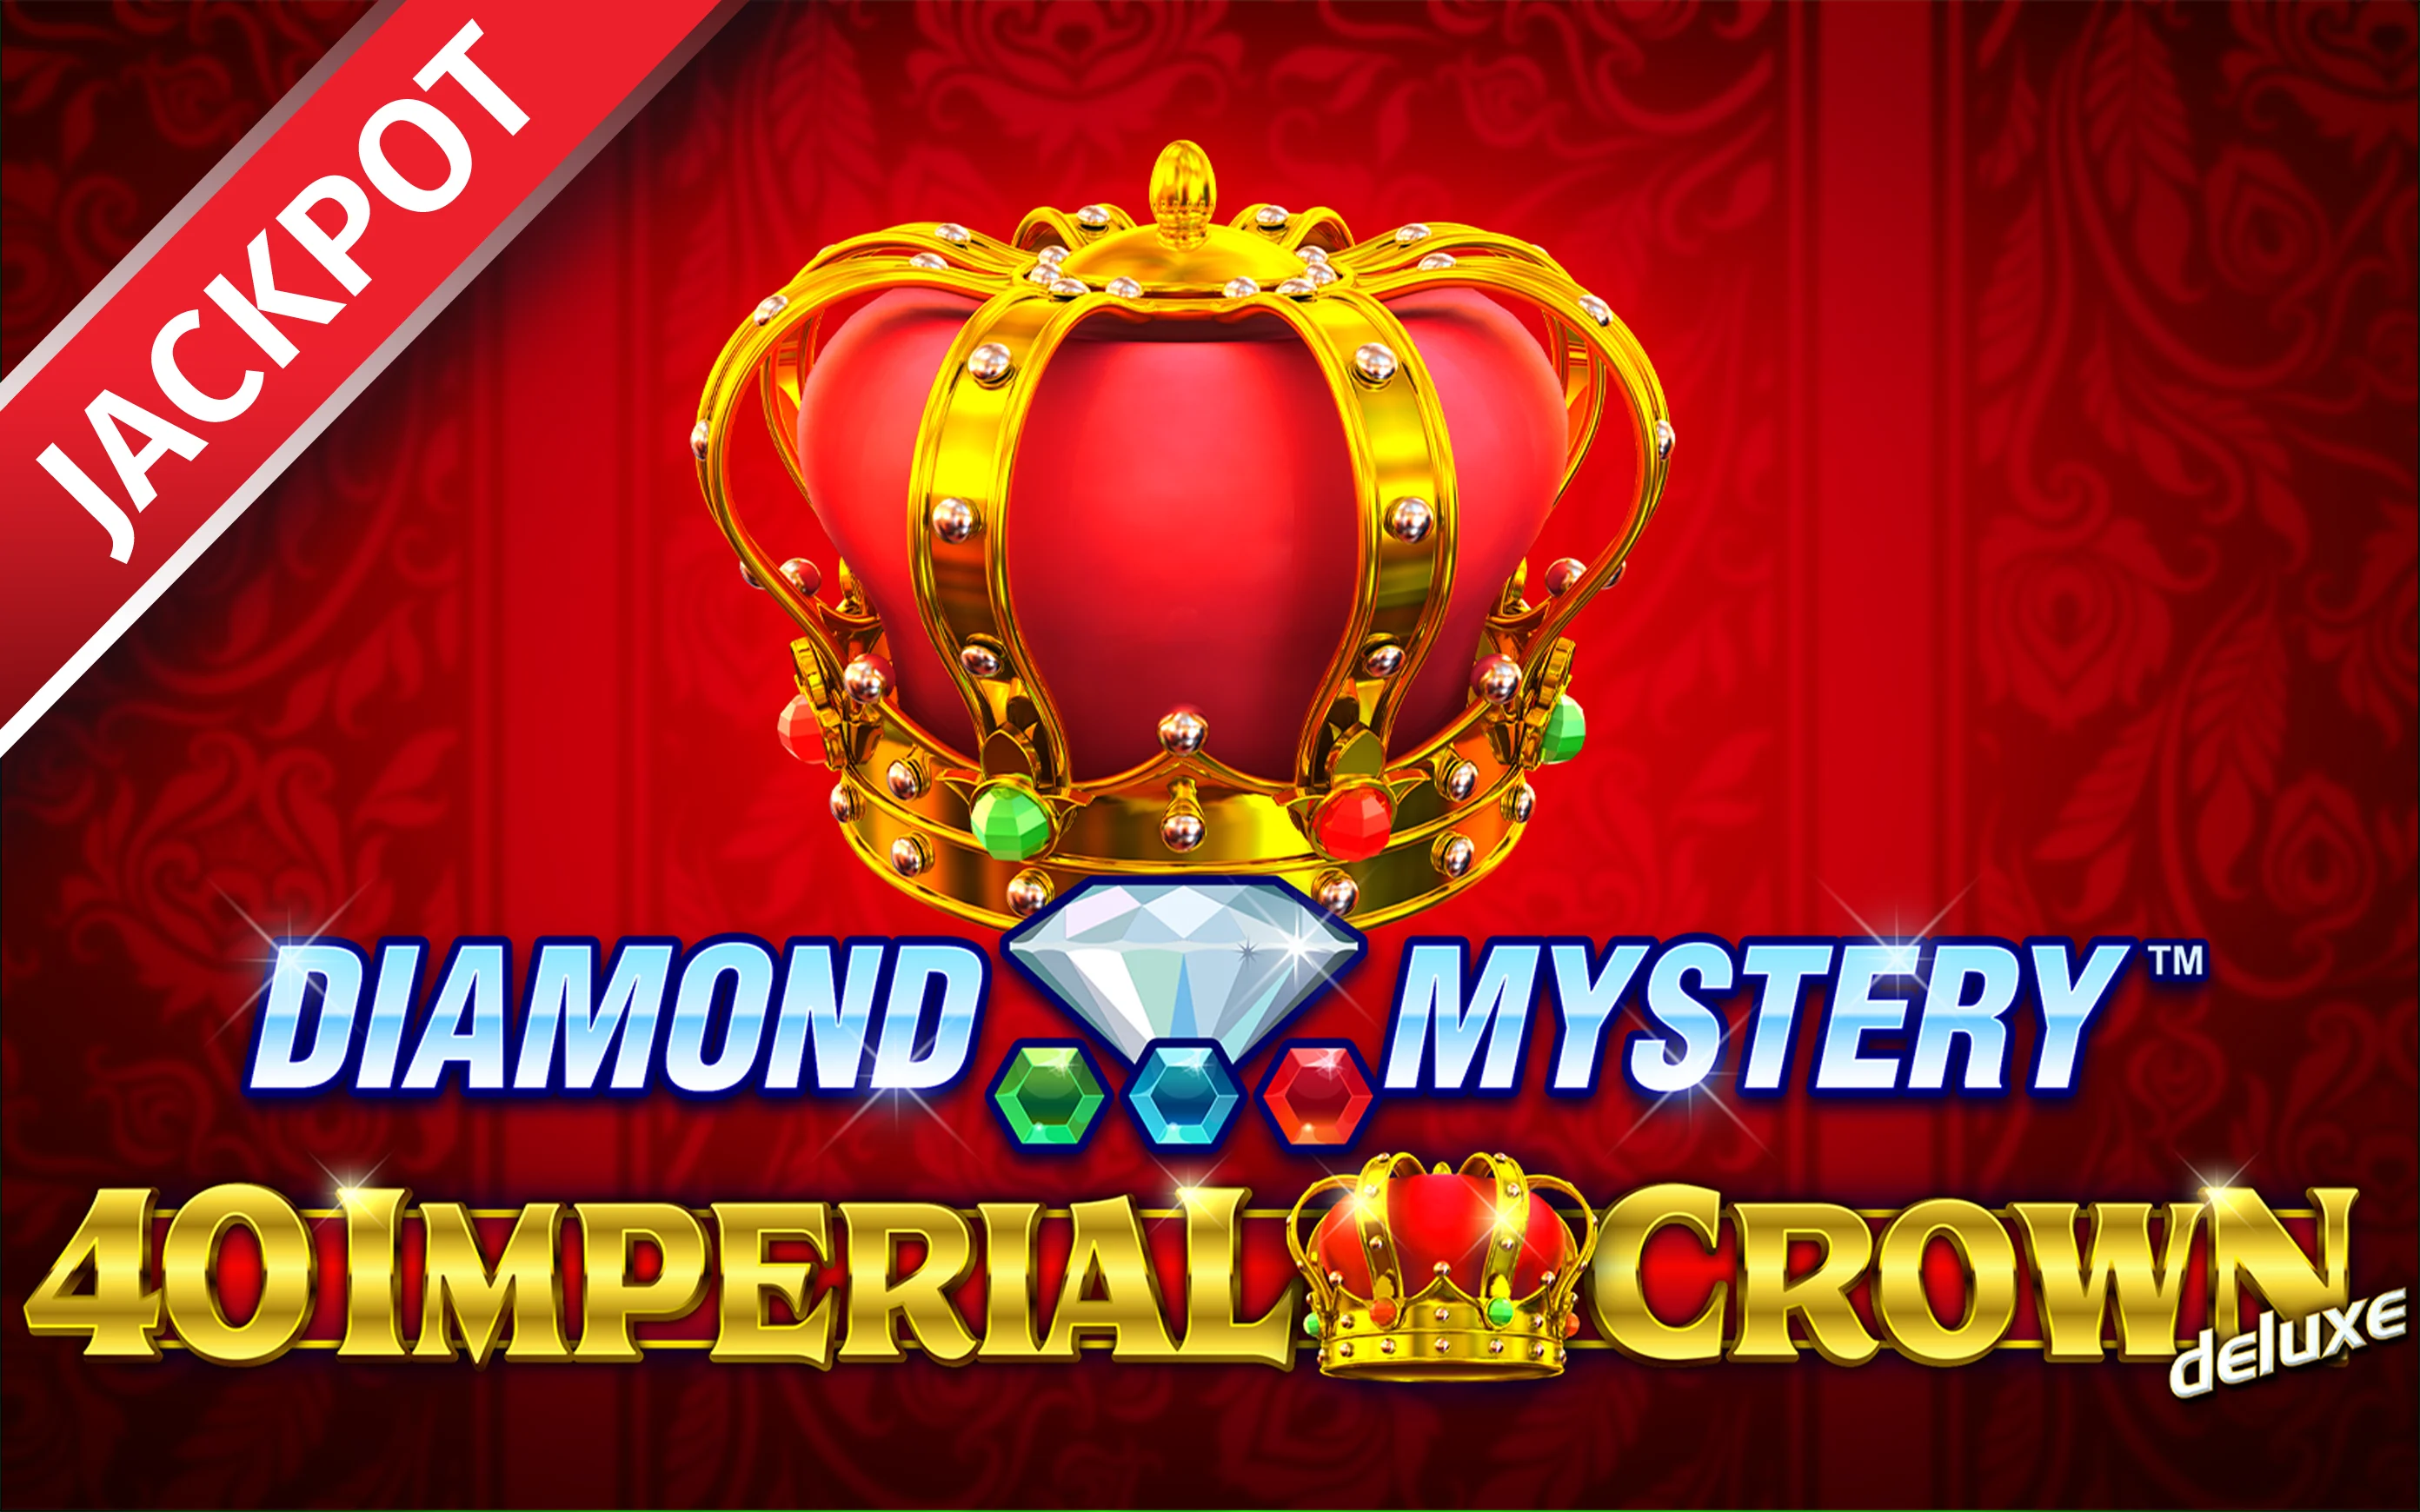 Jouer à Diamond Mystery™ – 40 Imperial Crown deluxe sur le casino en ligne Starcasino.be